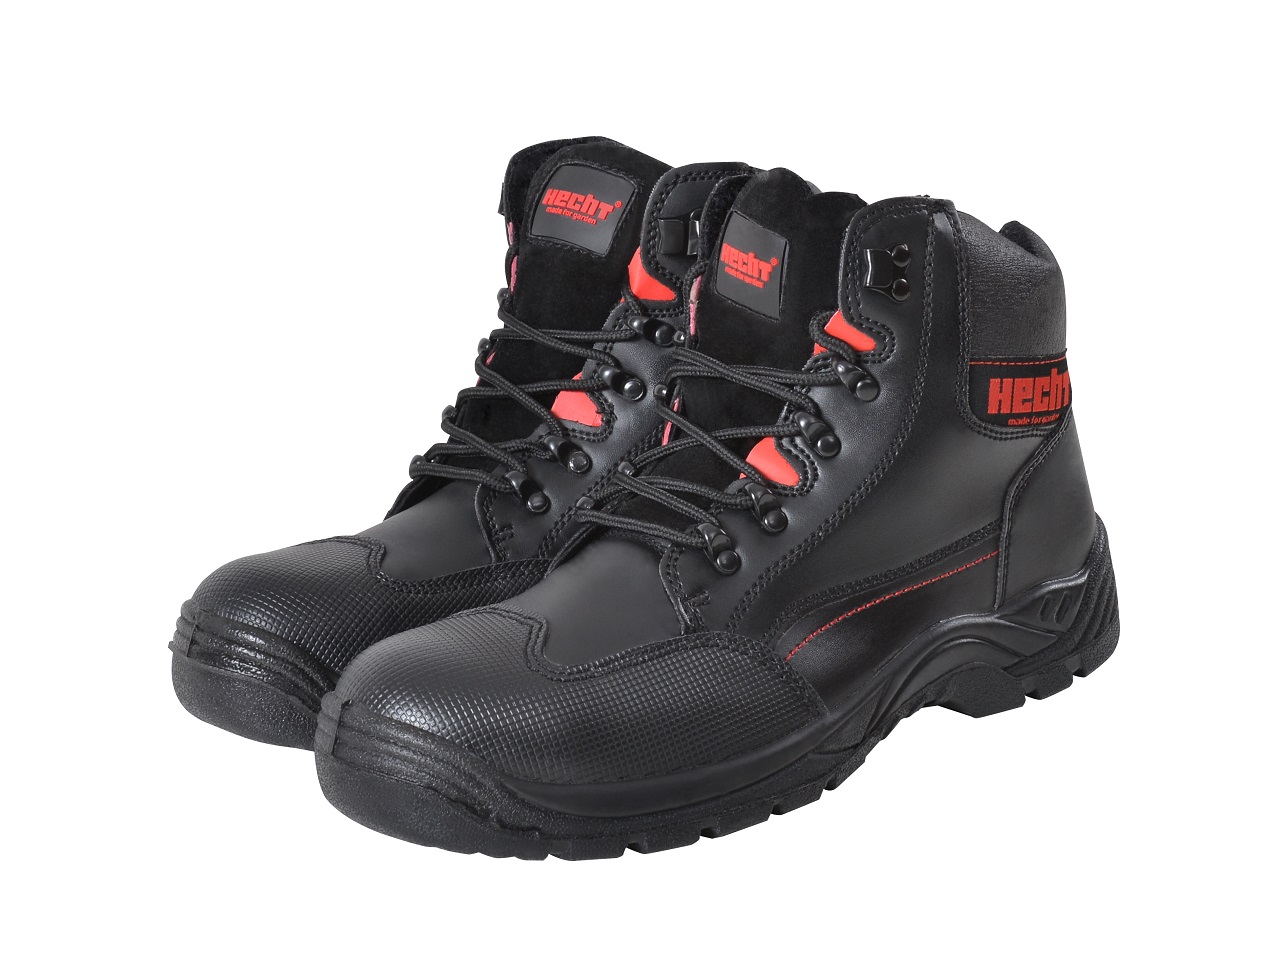 HECHT 900507 - pracovní ochranná obuv vel. 42